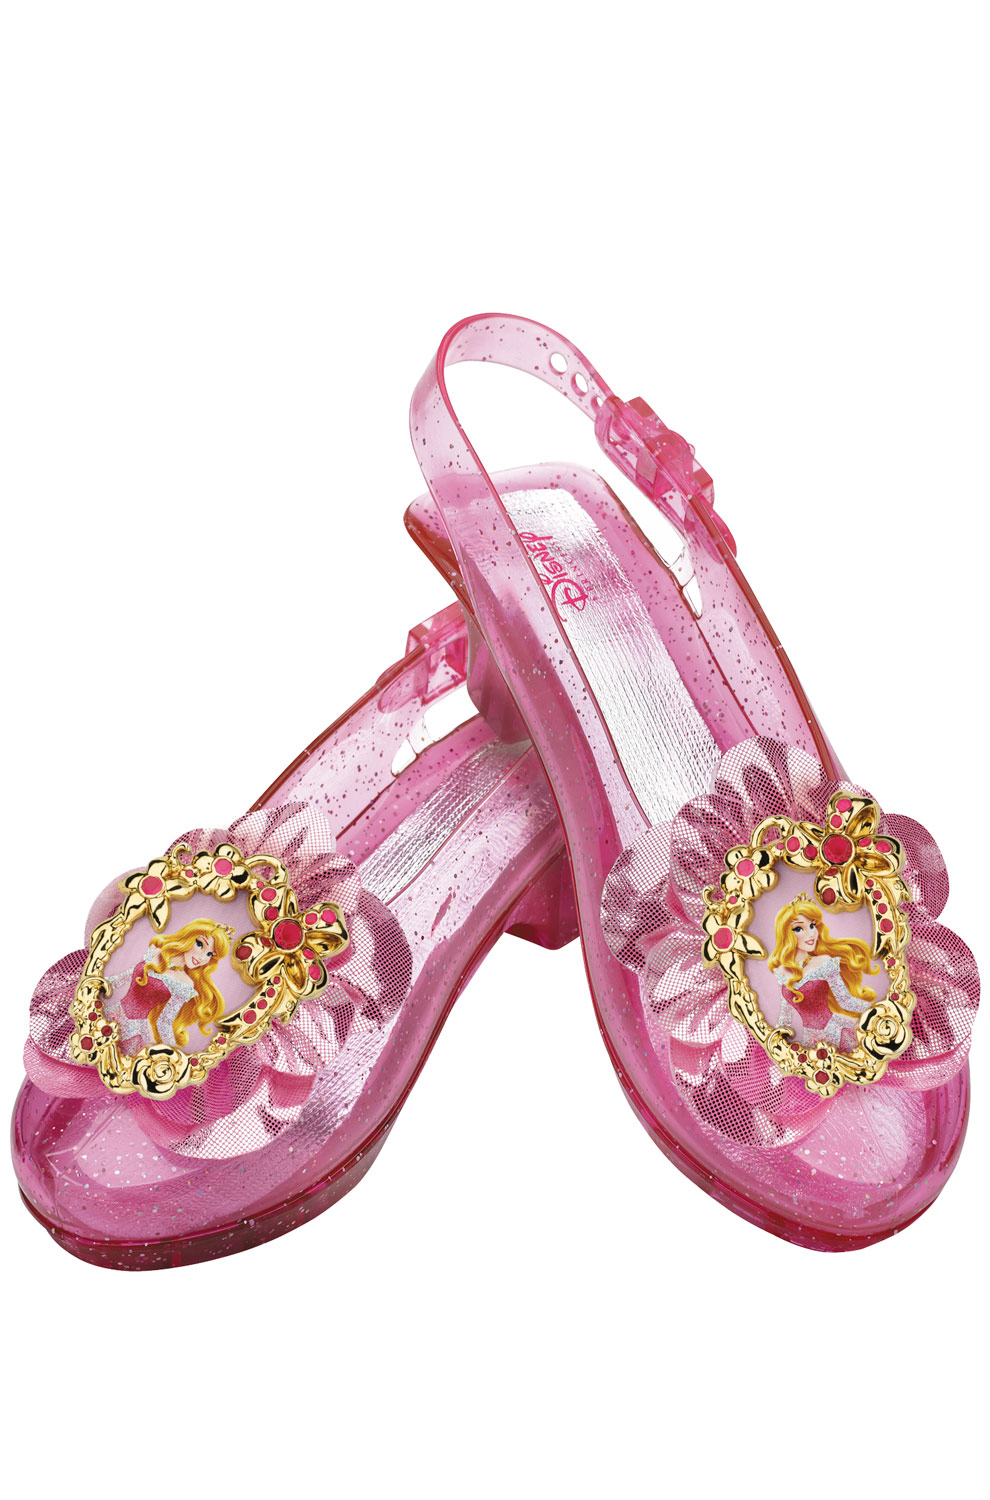 Disney Princess Aurora Sparkle Child Shoes